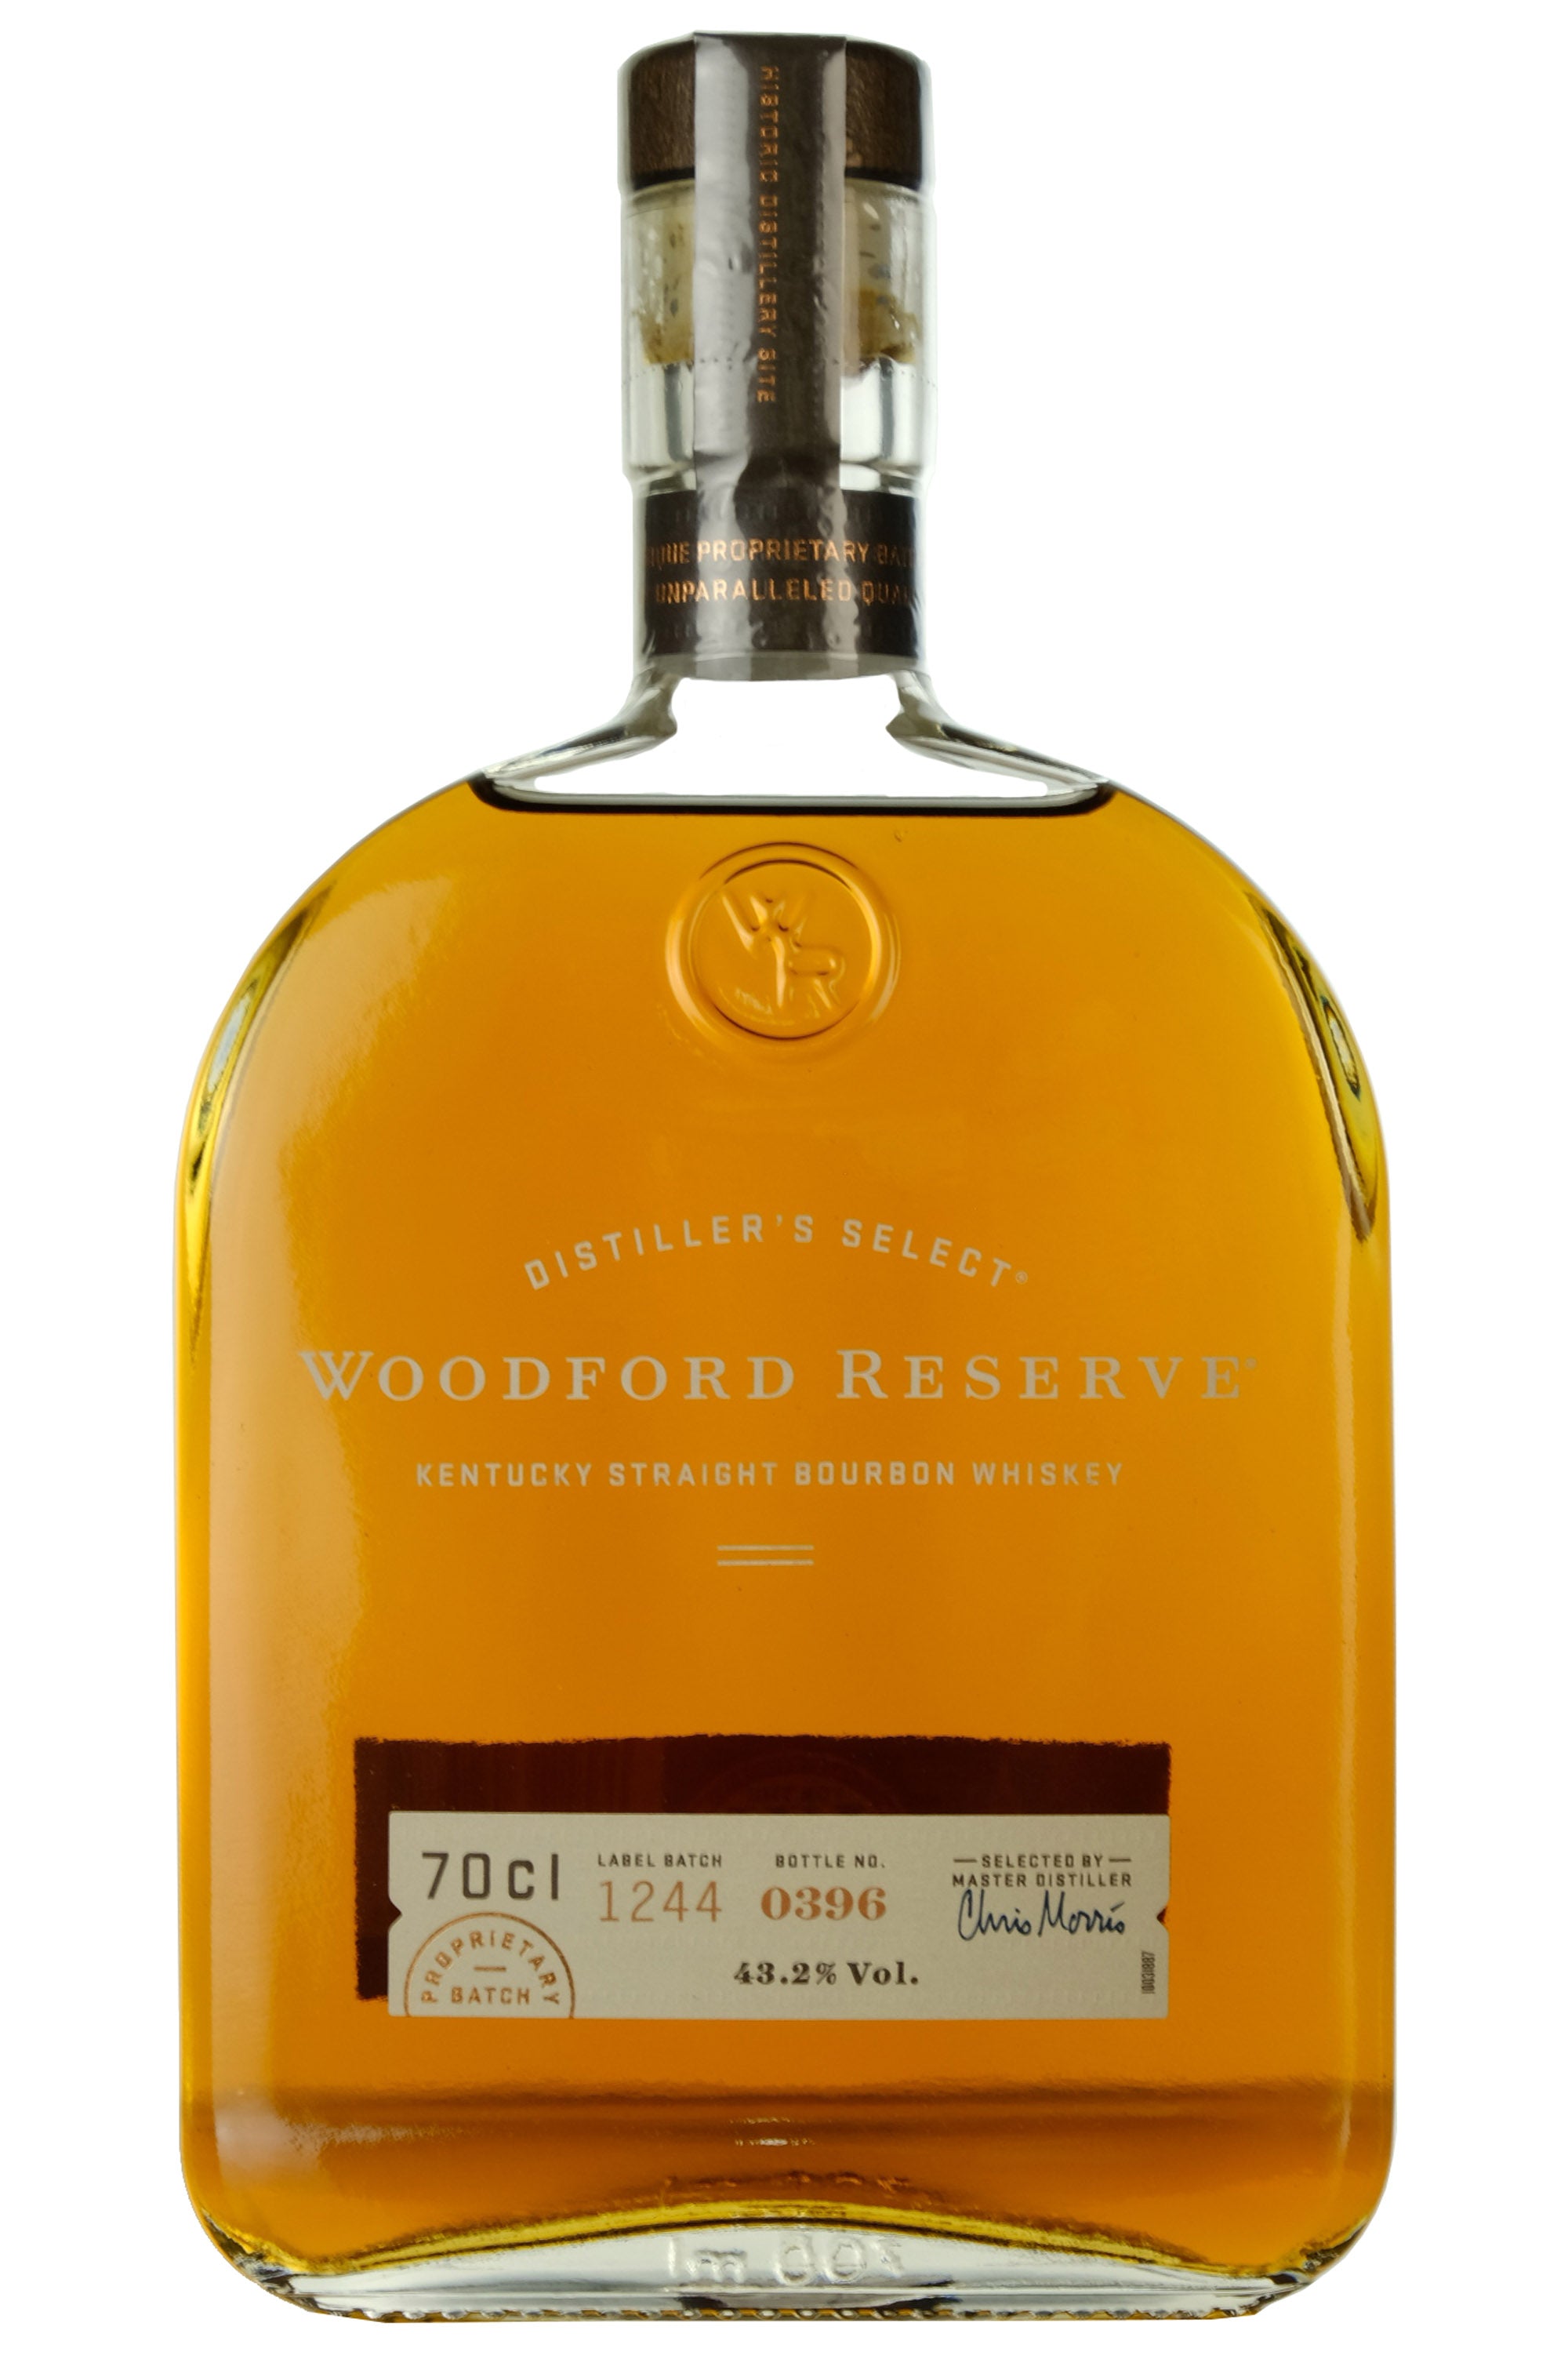 Woodford Reserve Distiller's Select Kentucky Bourbon